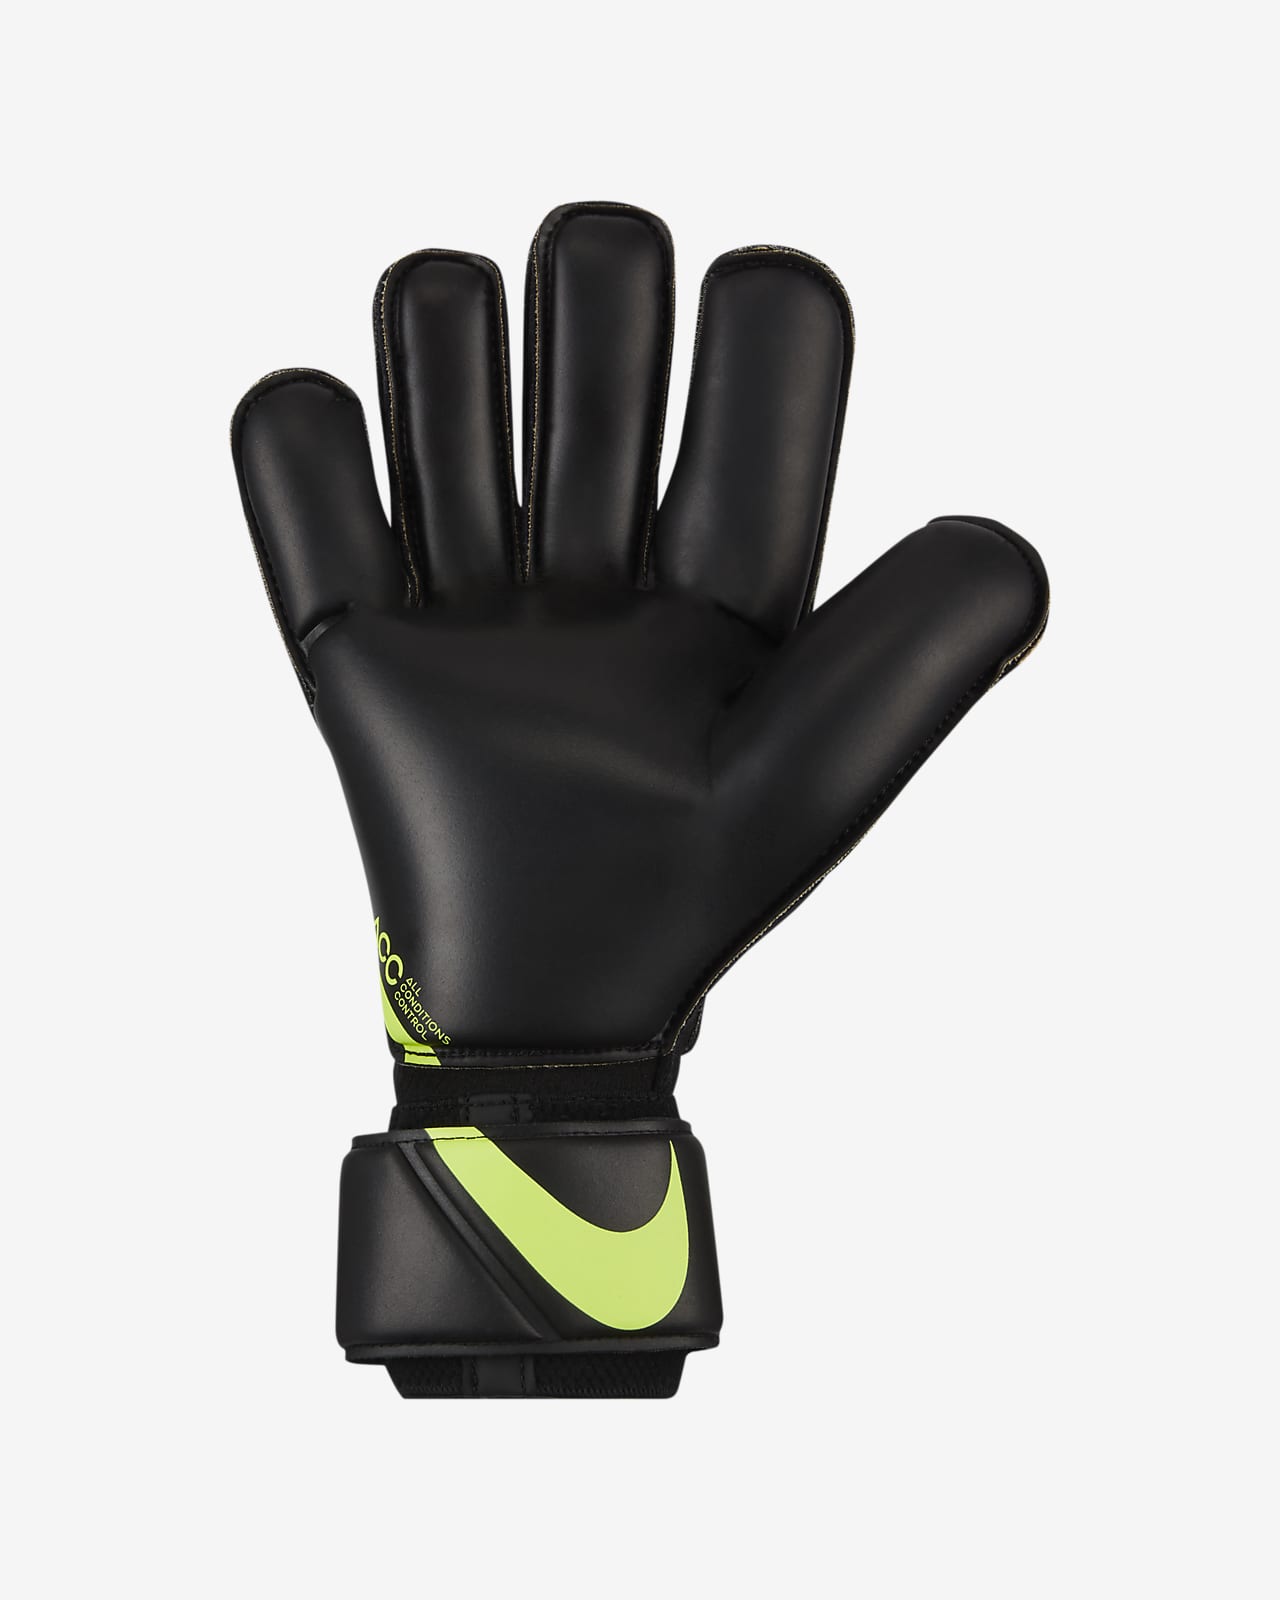 Nike Goalkeeper Vapor Grip3 Football Gloves.